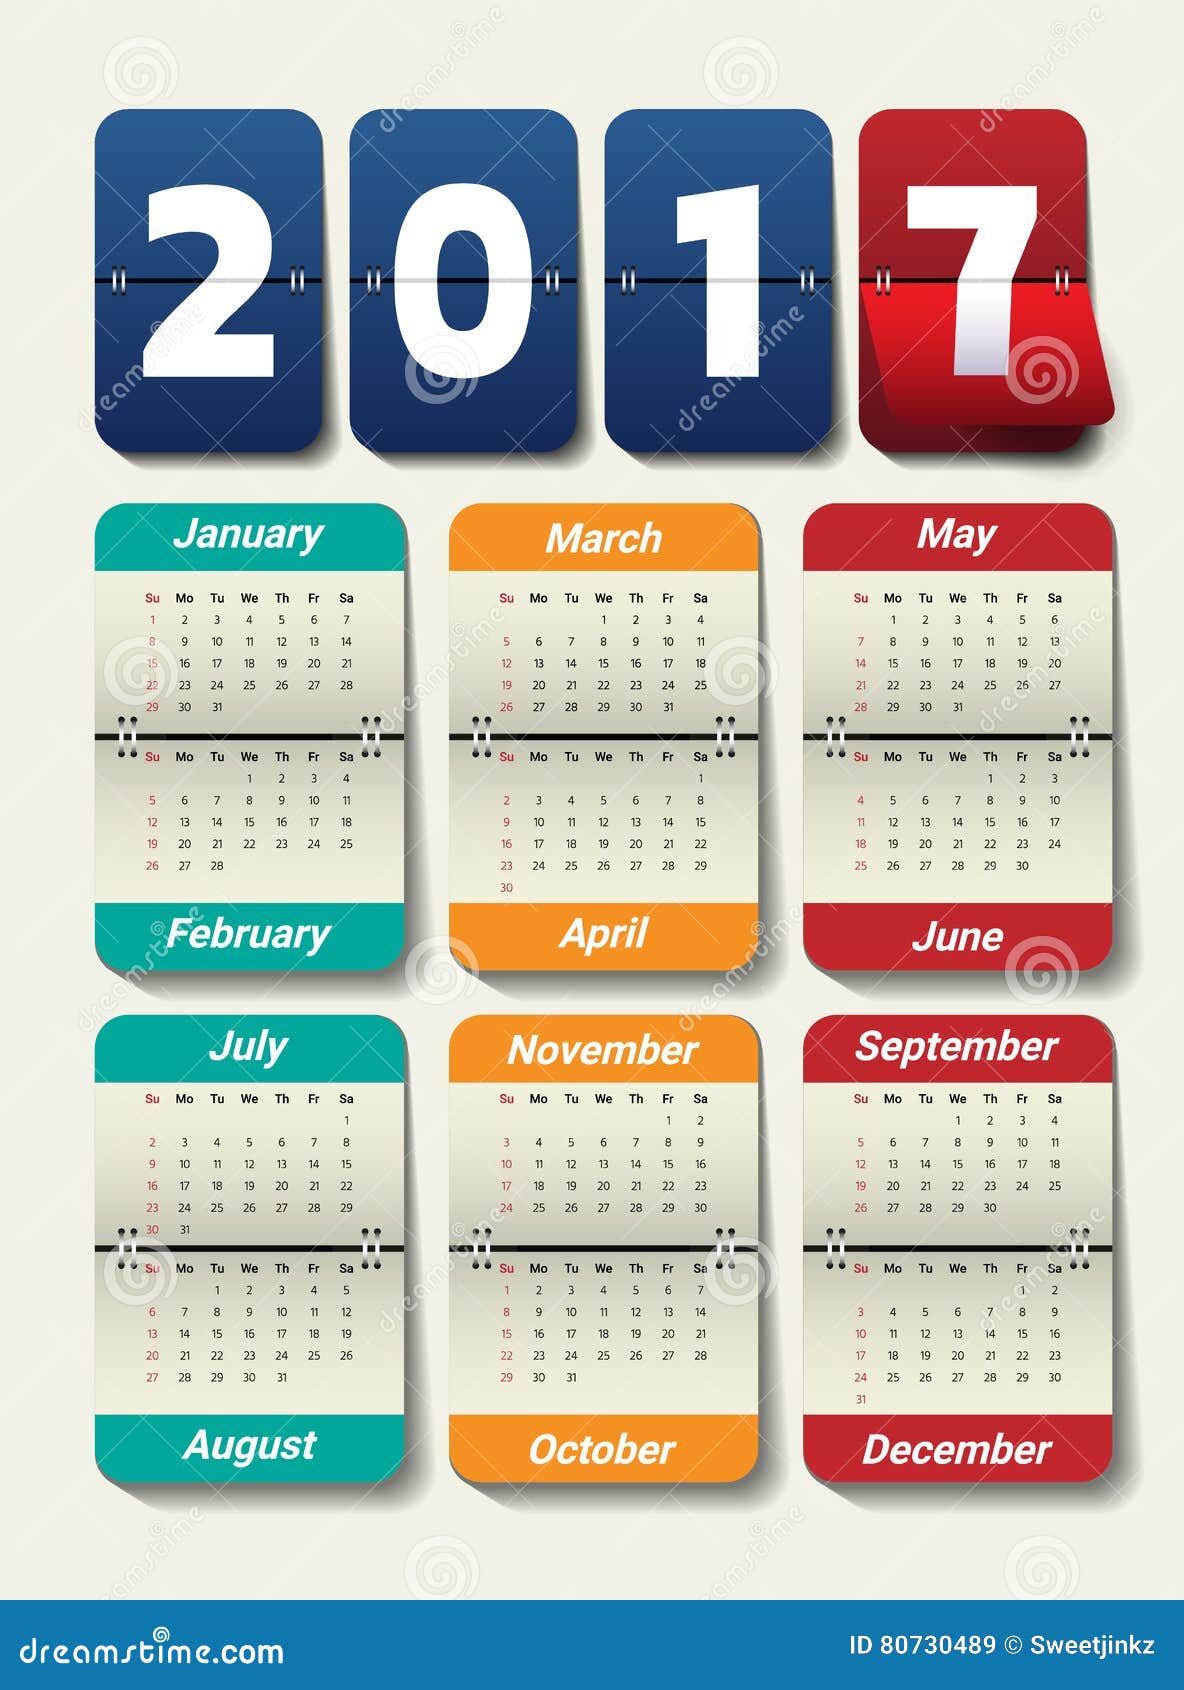 Office Calendar 2017 Template